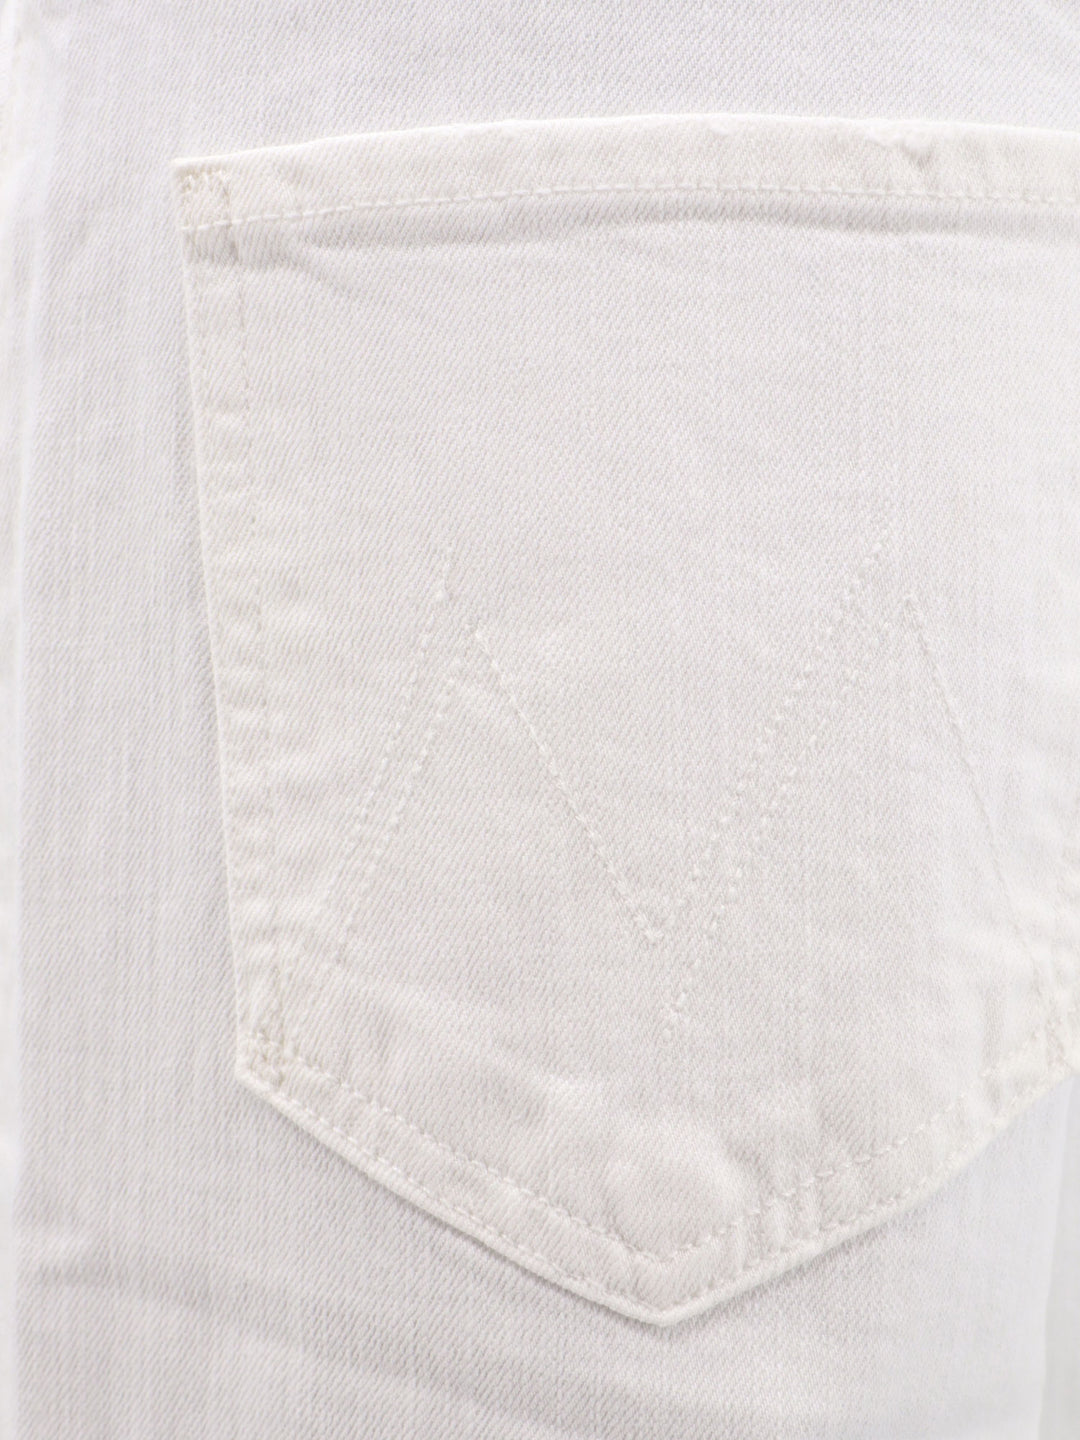 Pantalone white denim